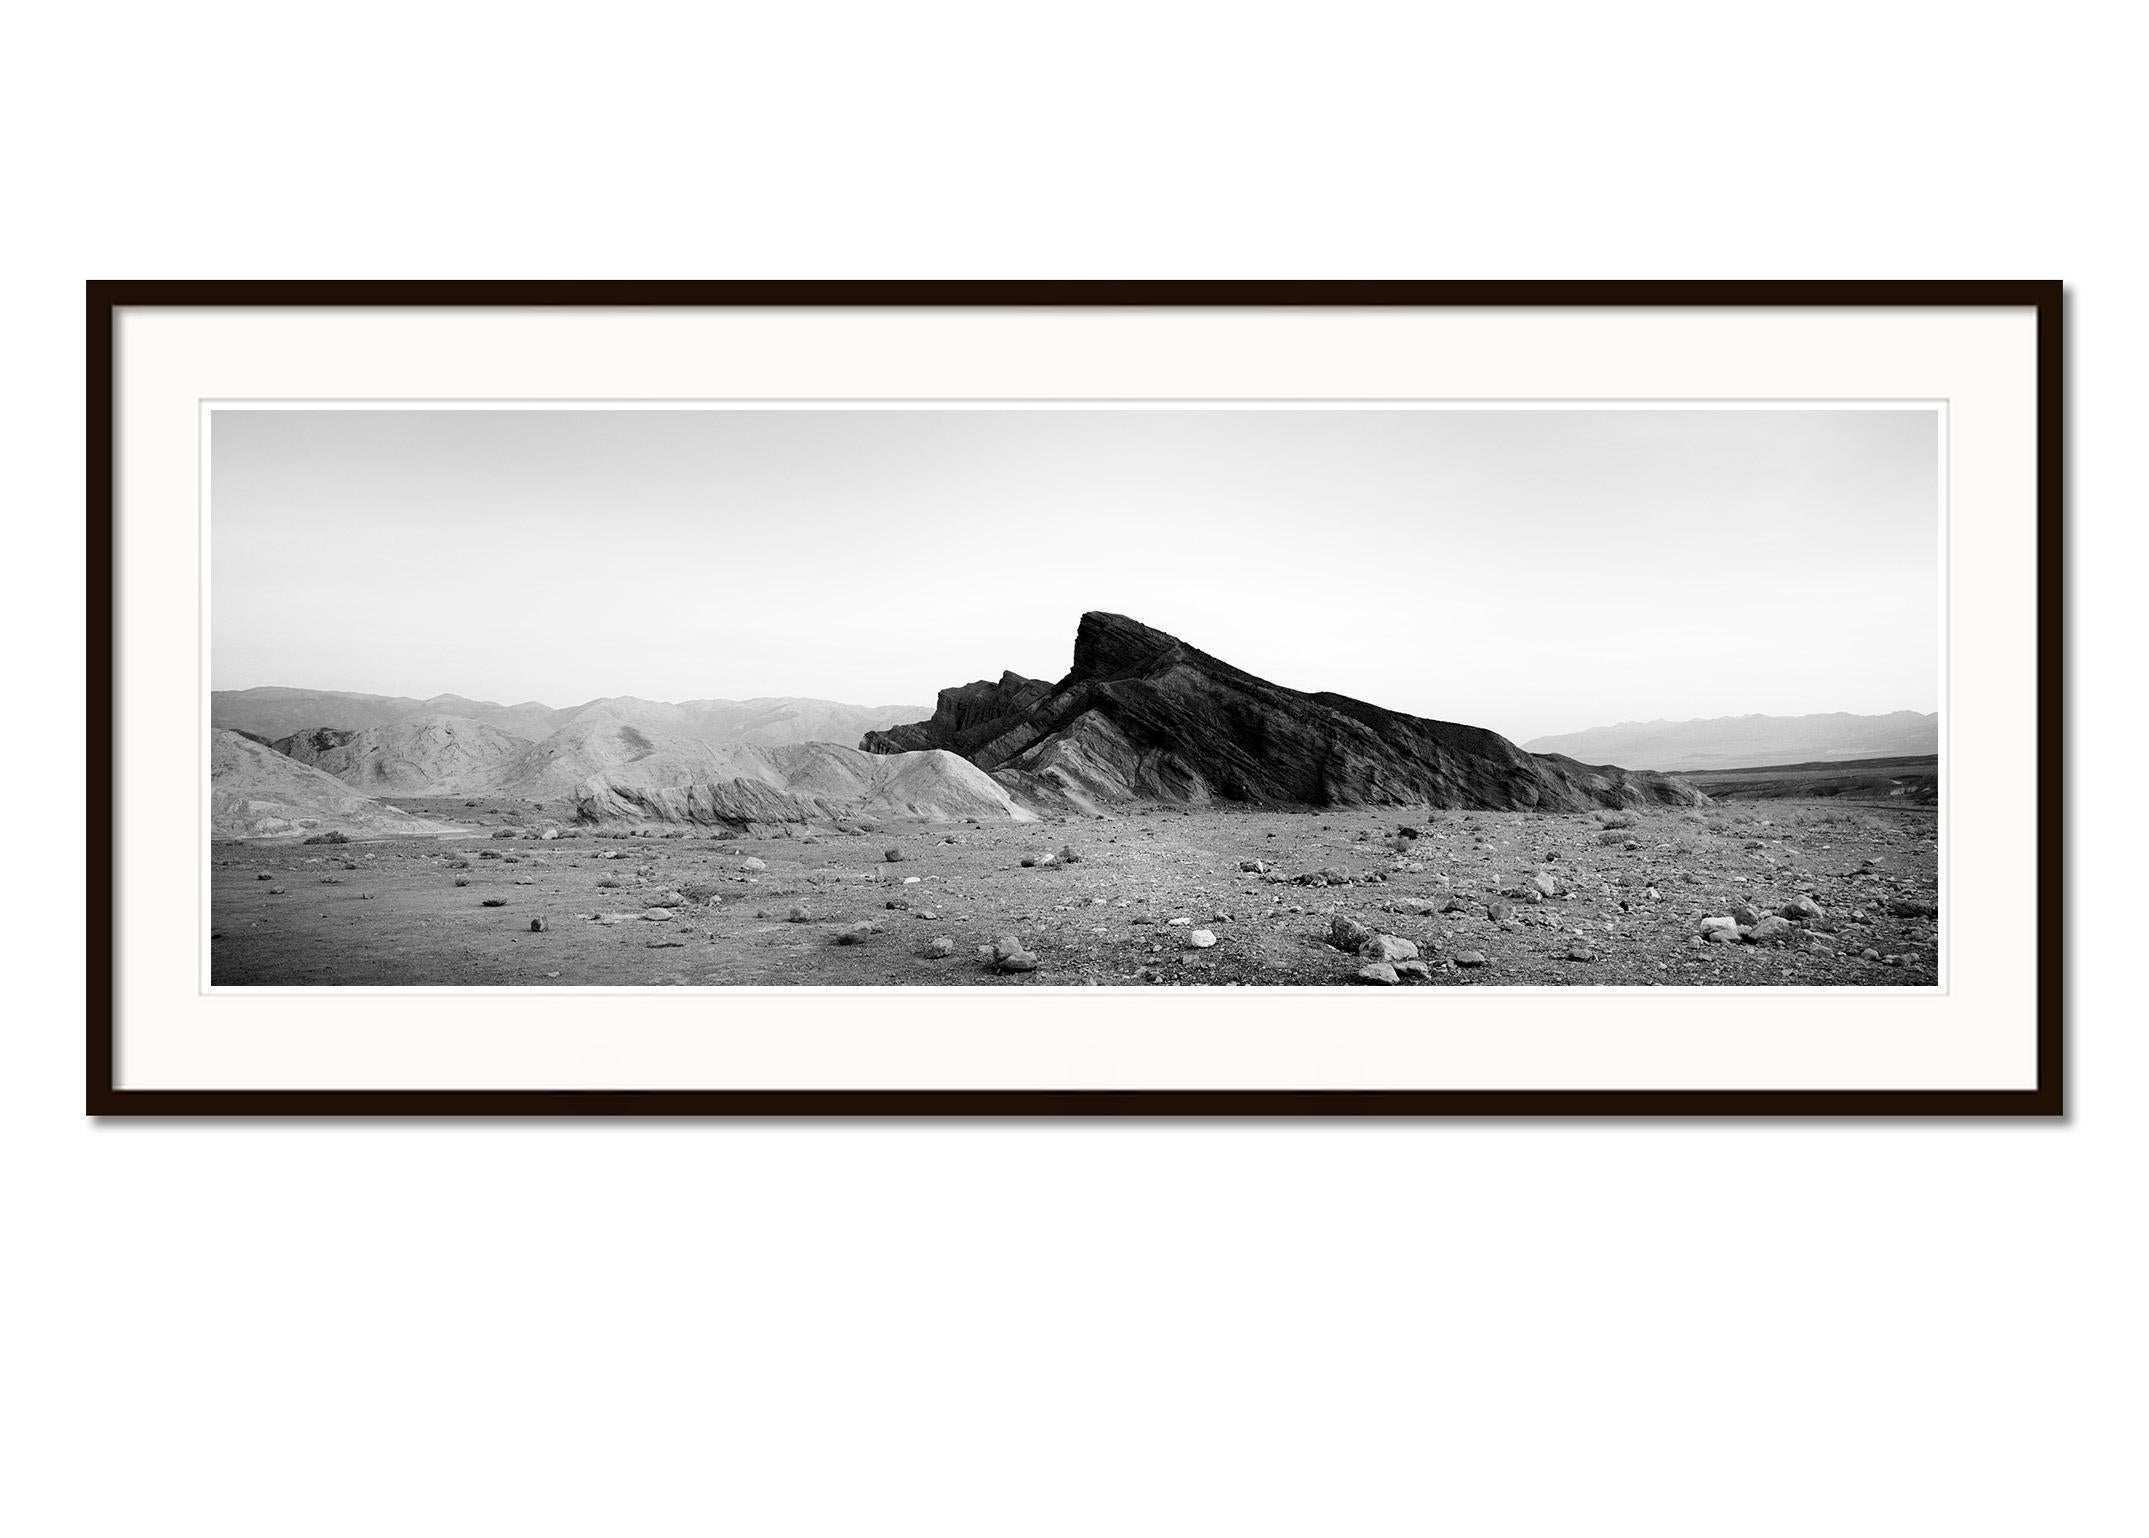 Black Rock, Berge, Death Valley, USA, schwarz-weiße Landschaftsfotografie (Grau), Landscape Photograph, von Gerald Berghammer